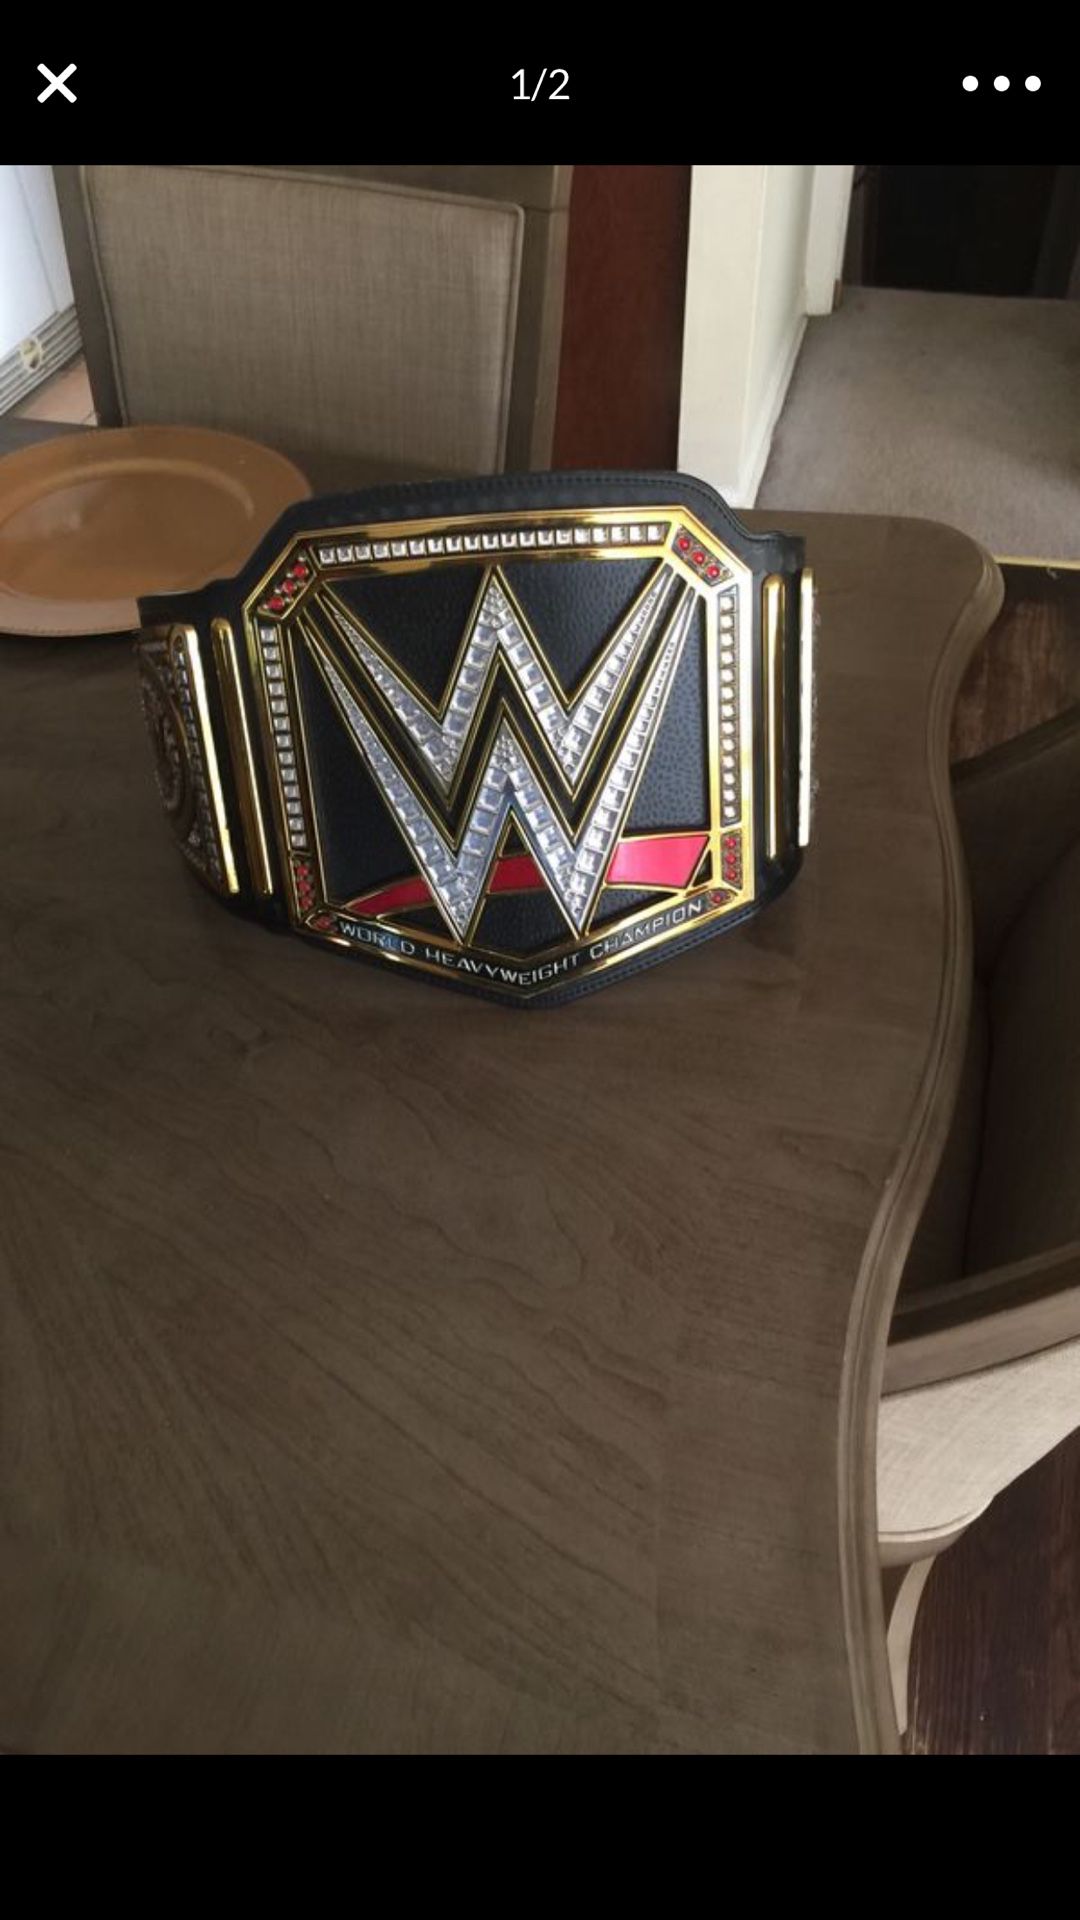 WWE wrestling belts